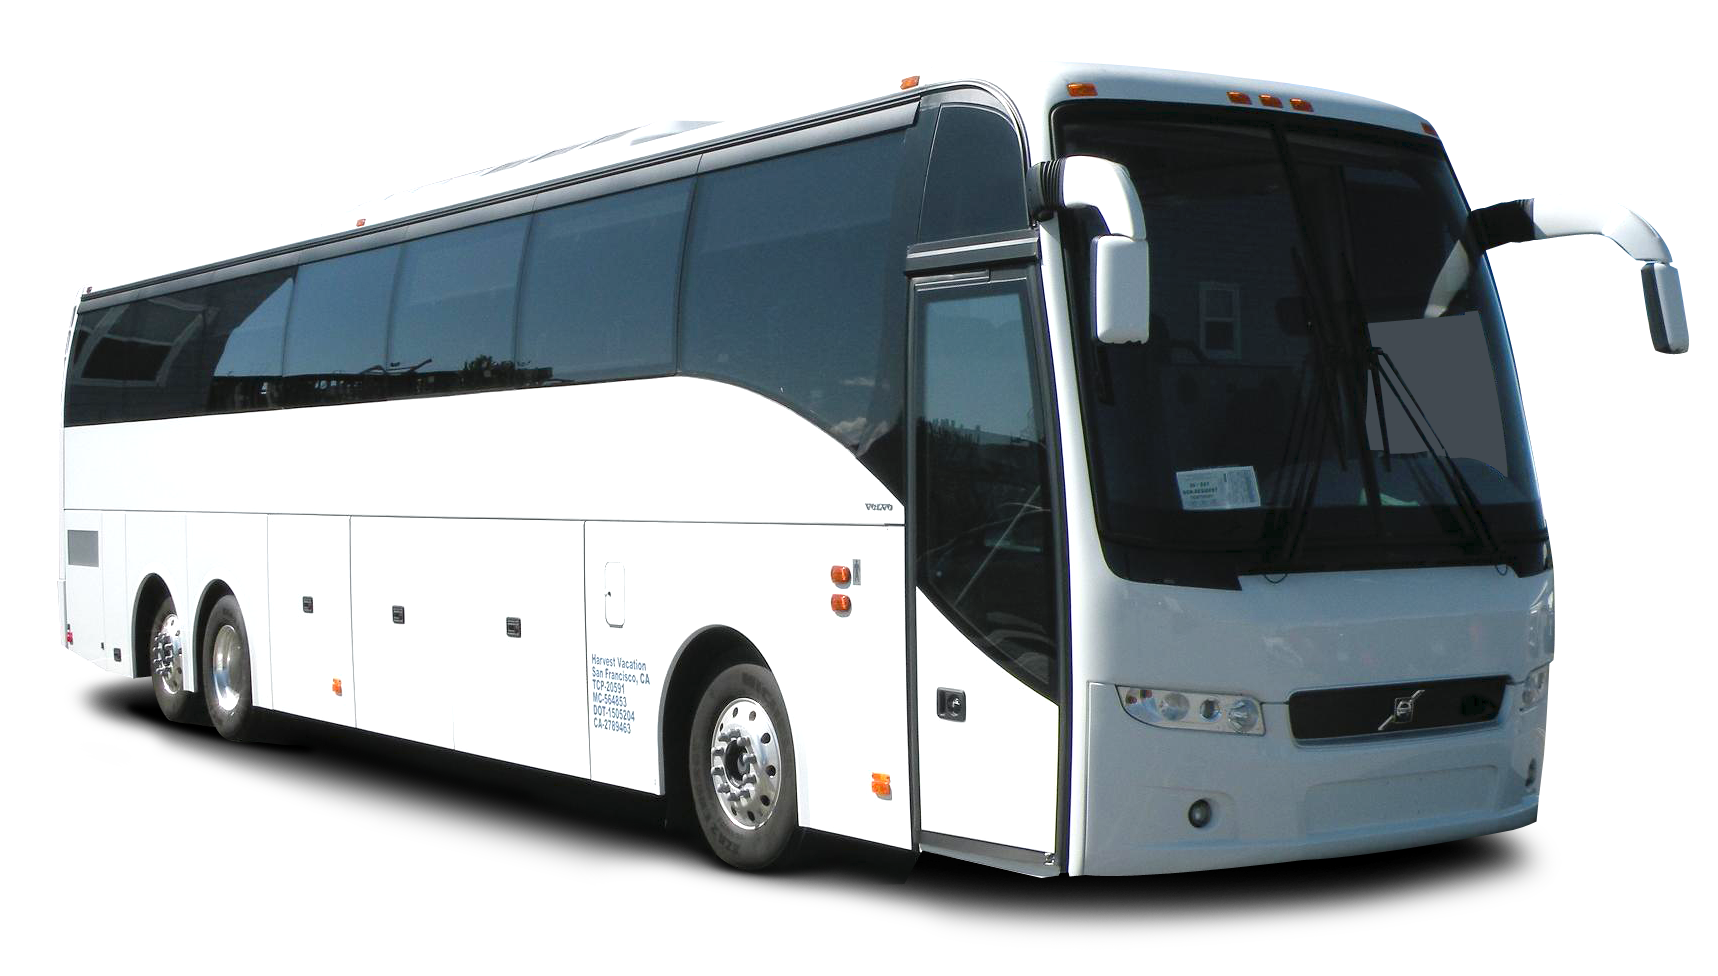 coach clipart tourist bus